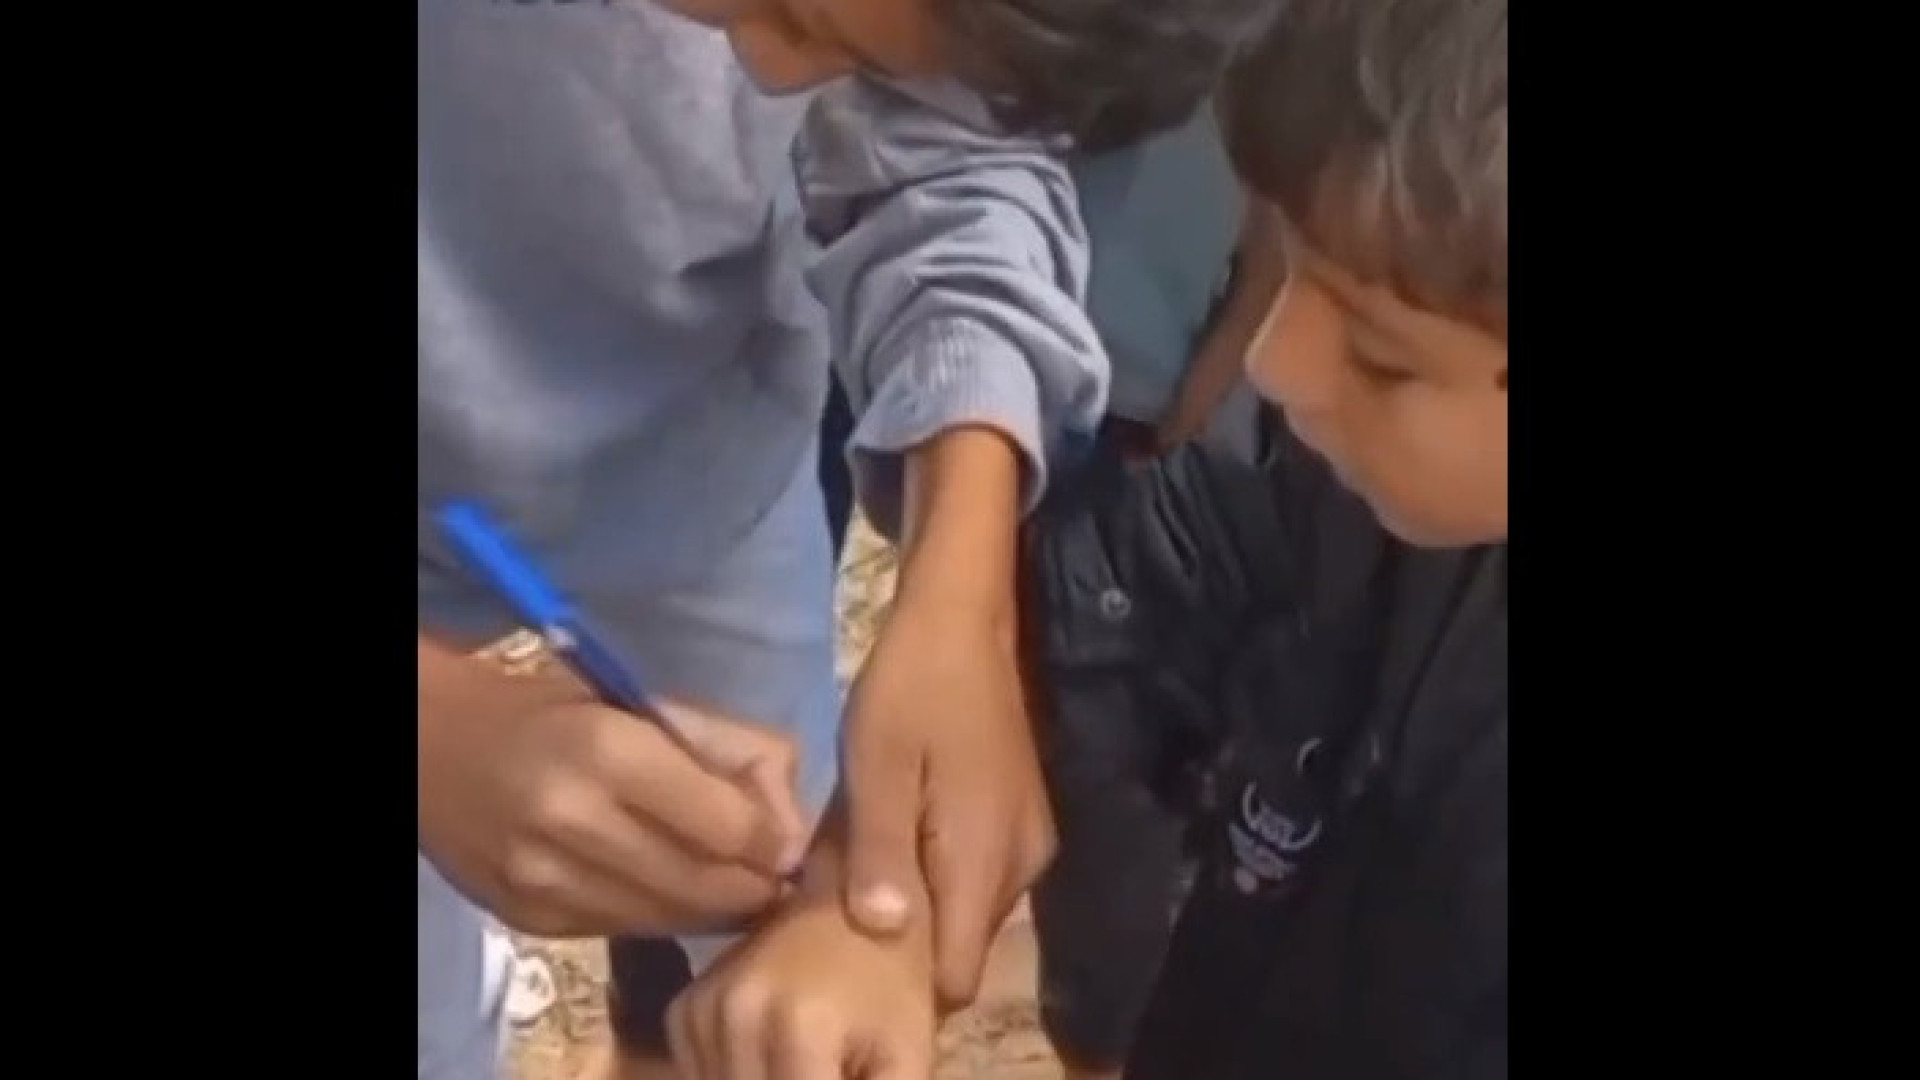 Crianças palestinas escrevem nome no braço para serem identificadas